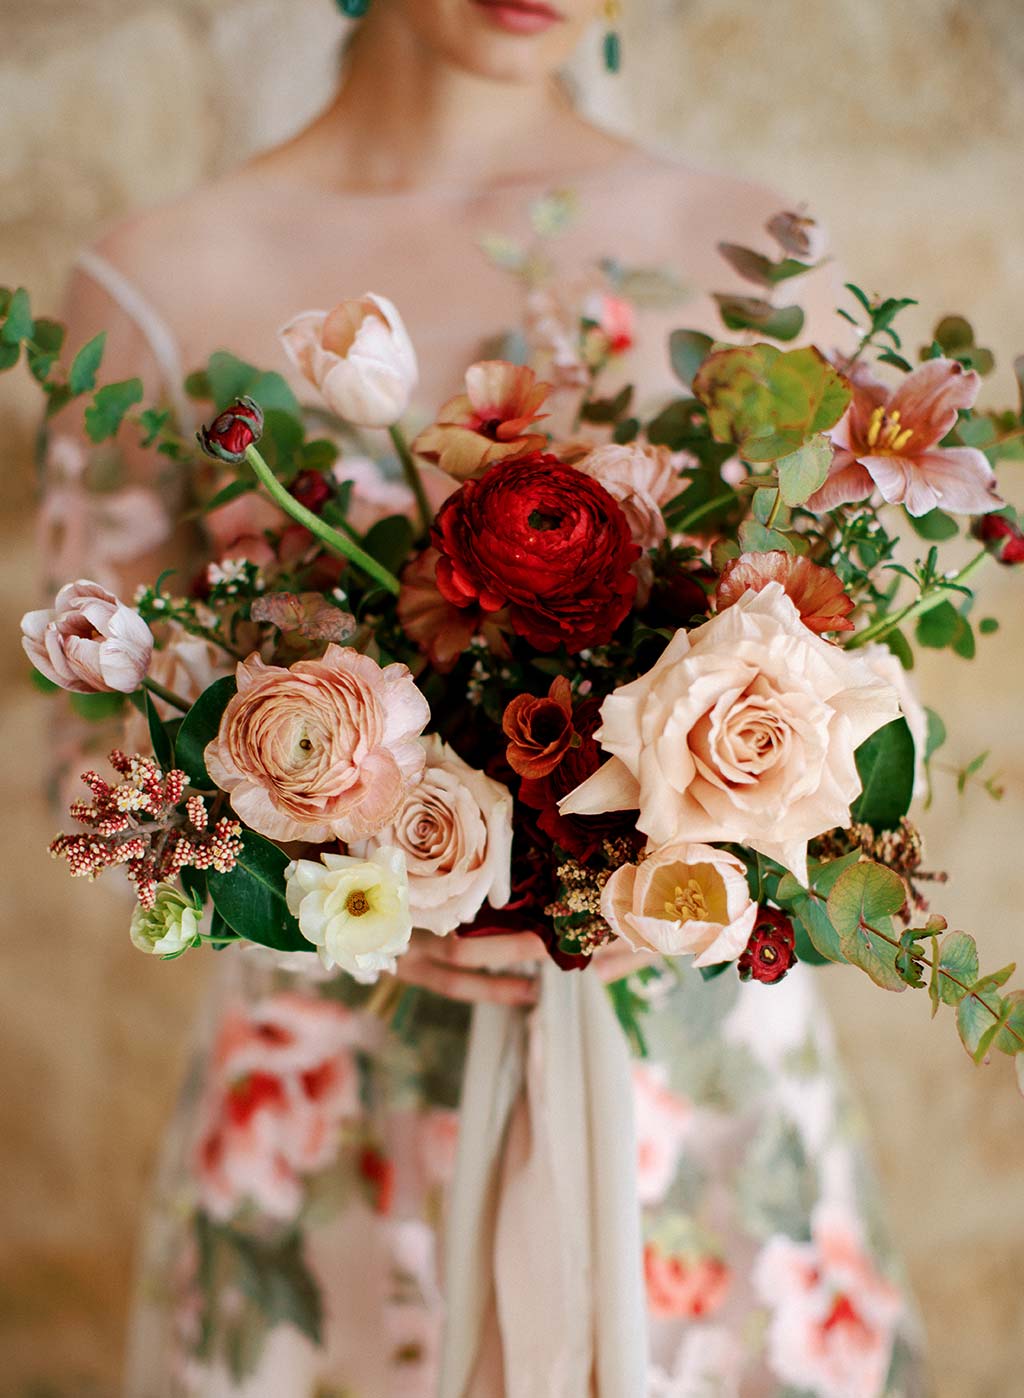 Wedding Floral Boquet